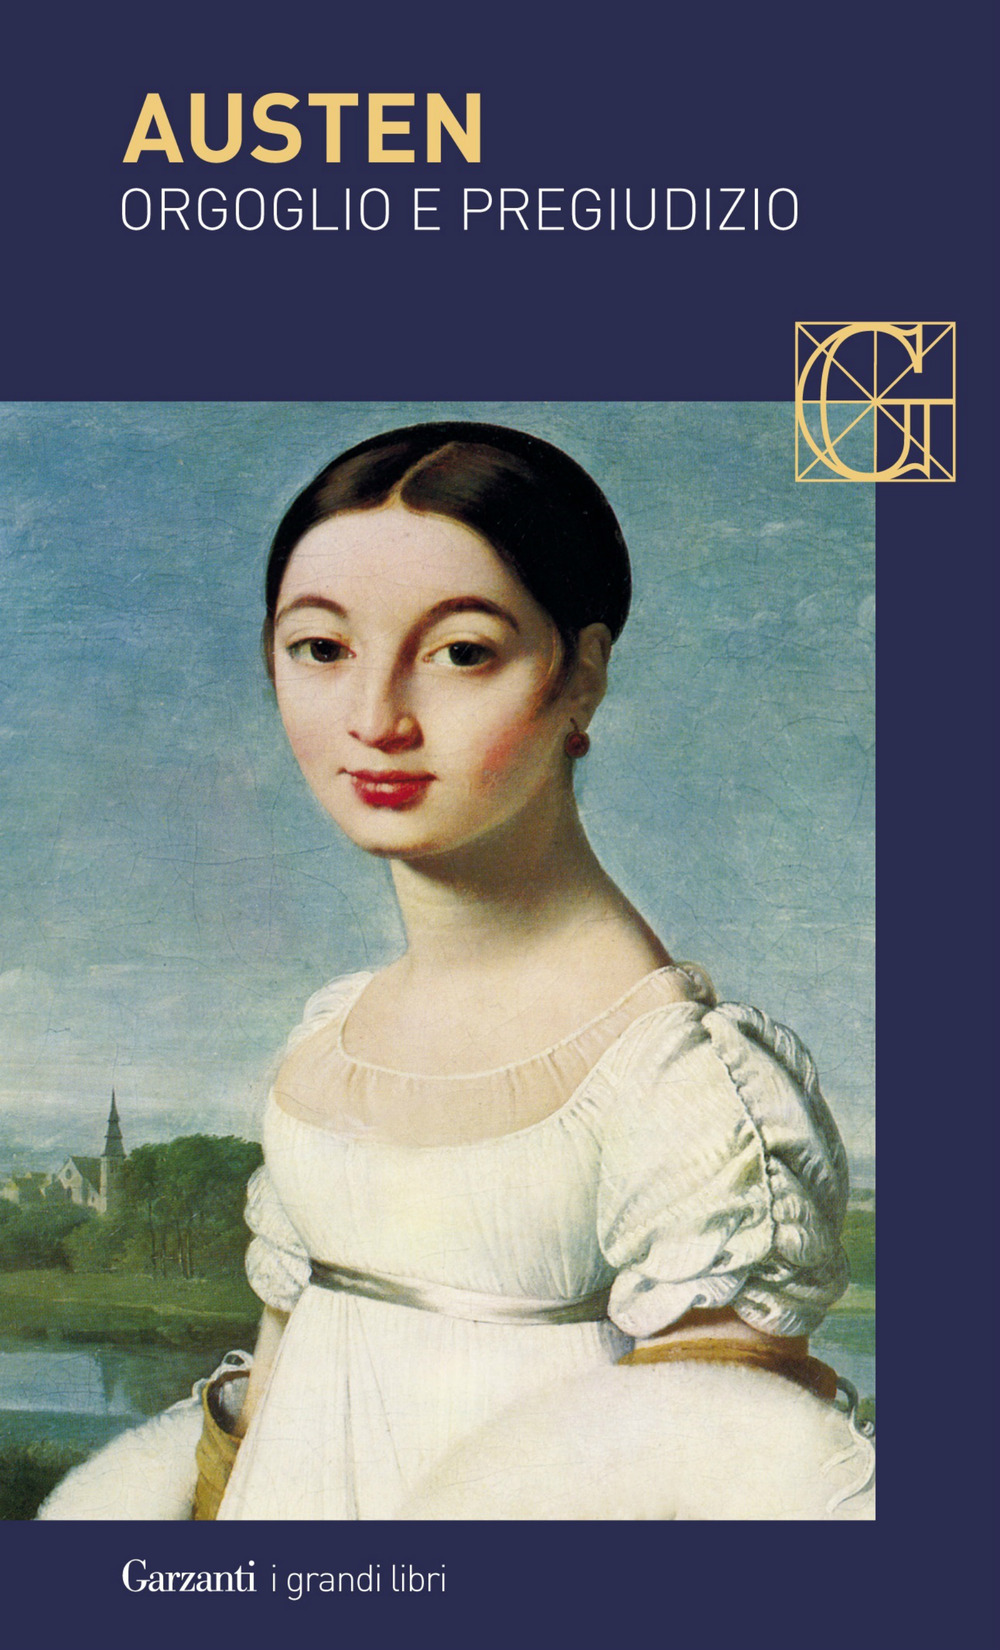 copertina del libro sul matrimonio orgoglio e pregiudizio di Jane Austen